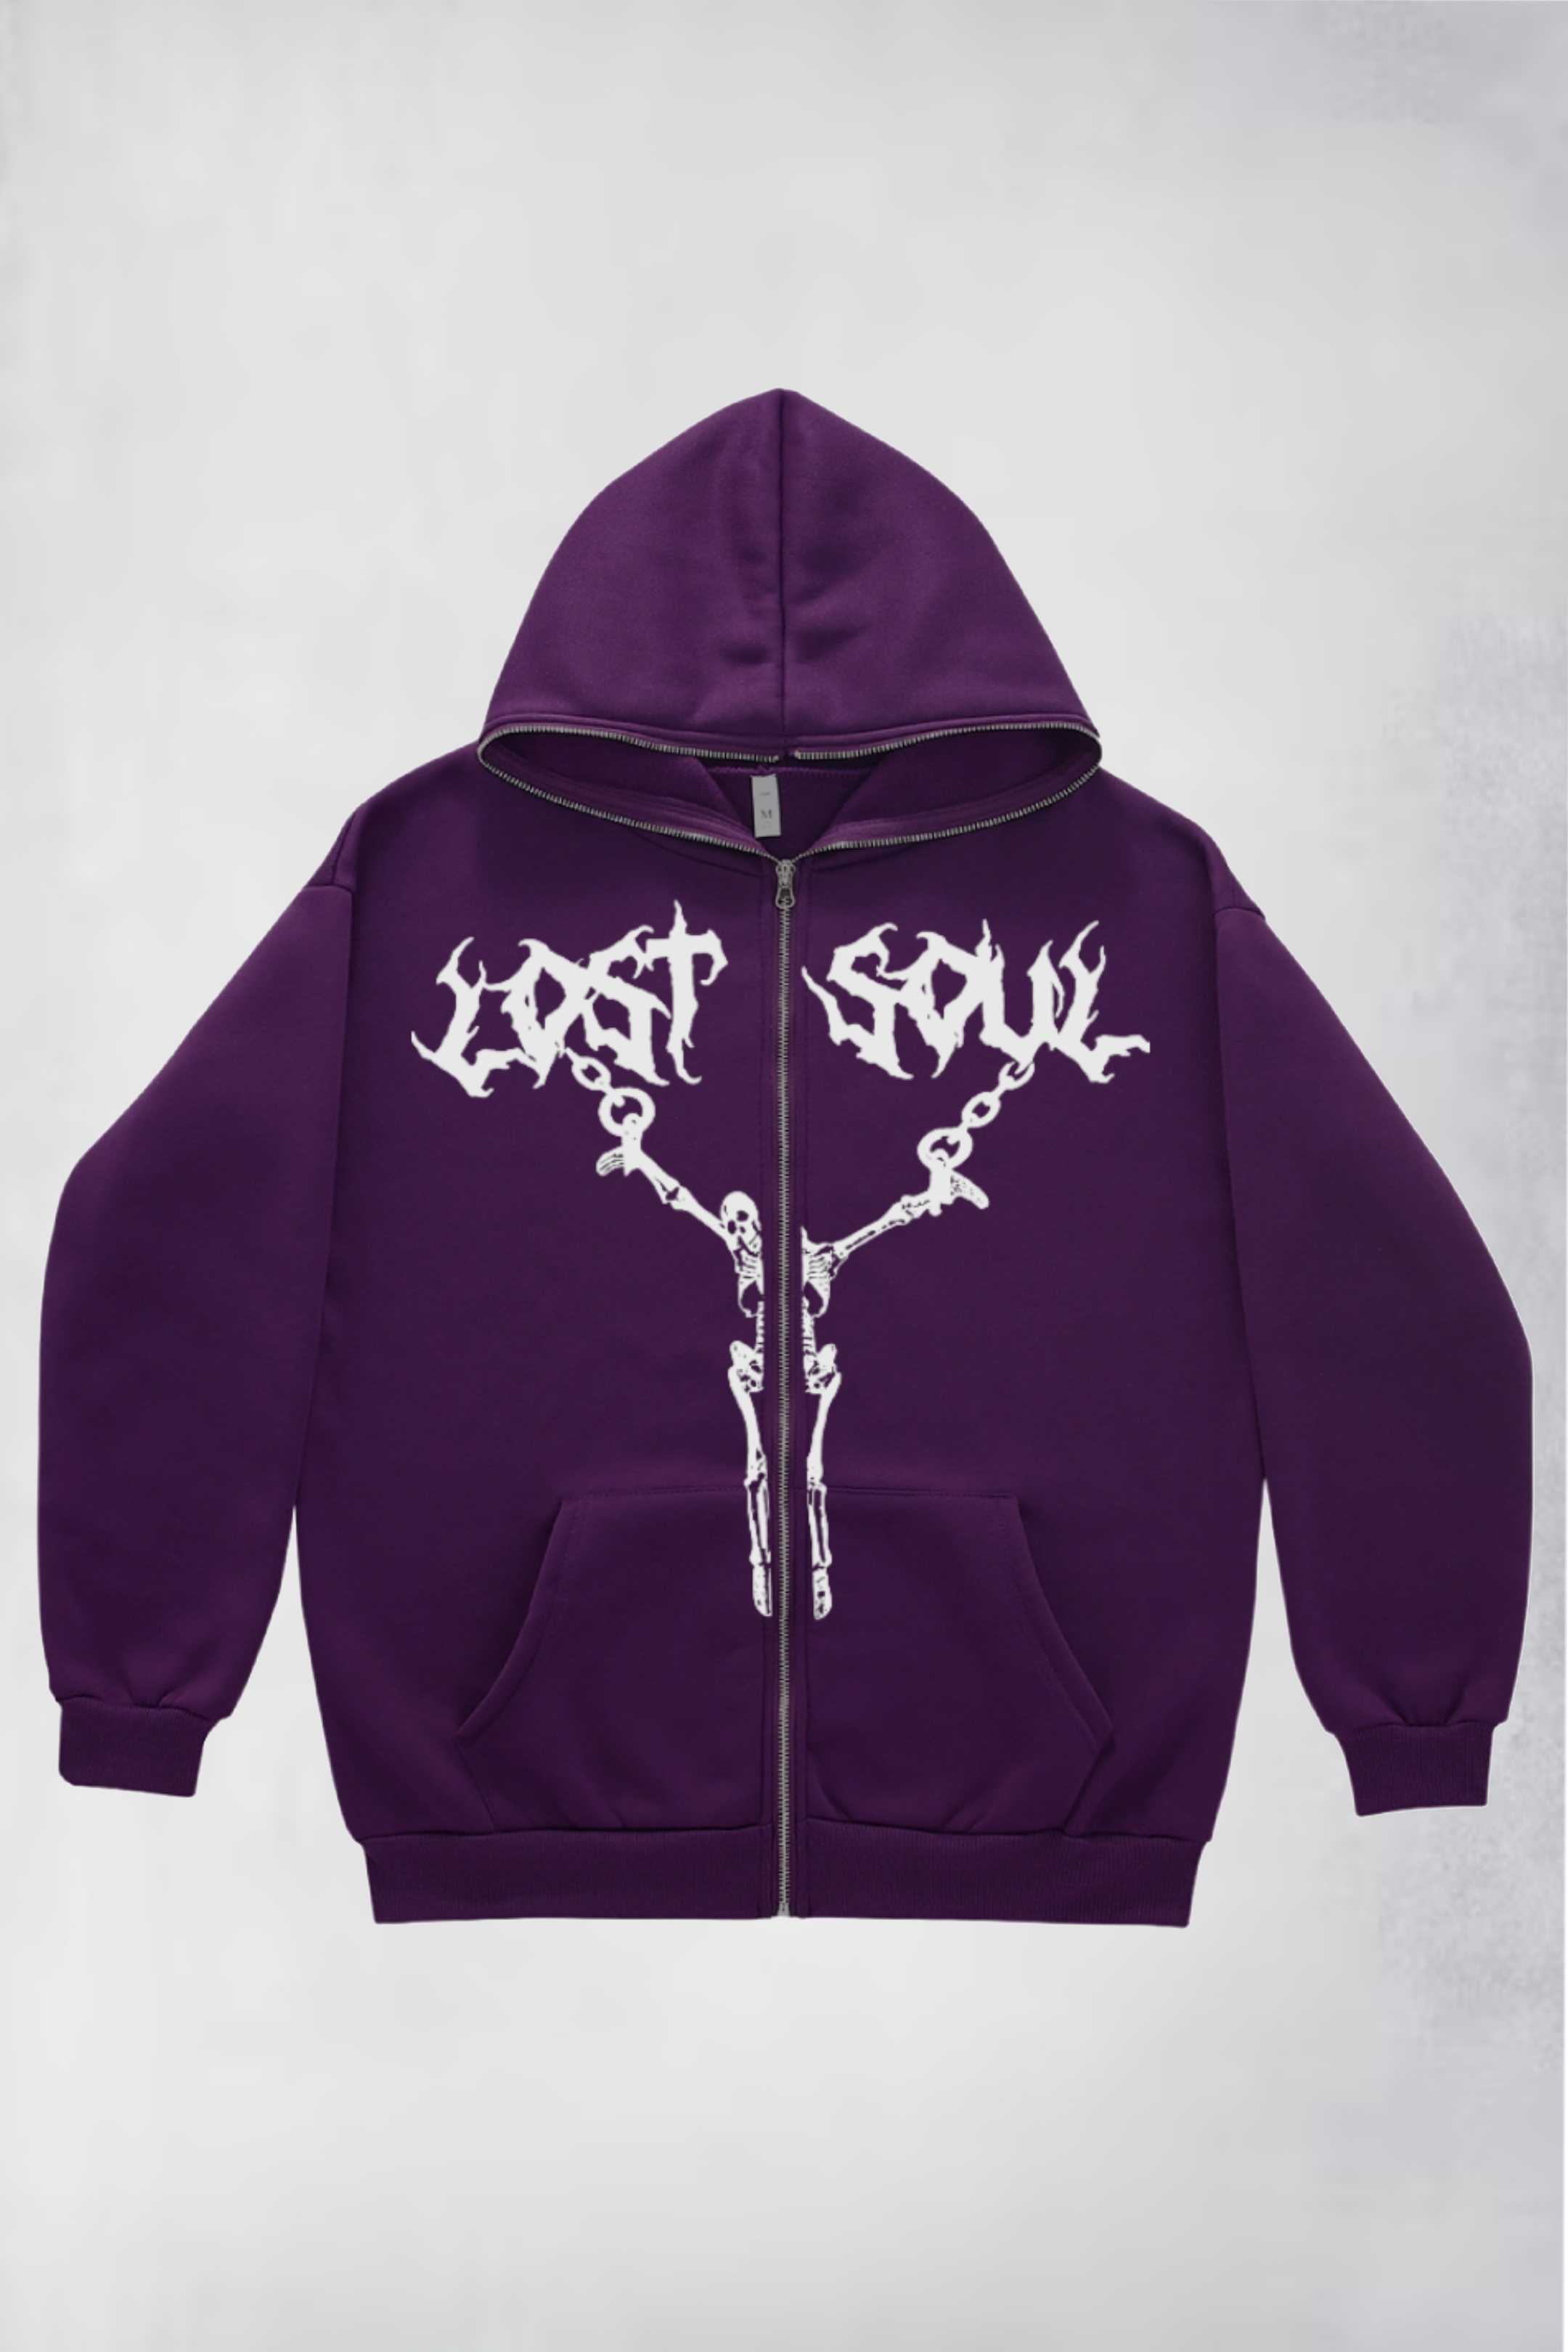 Lost Soul hoodie